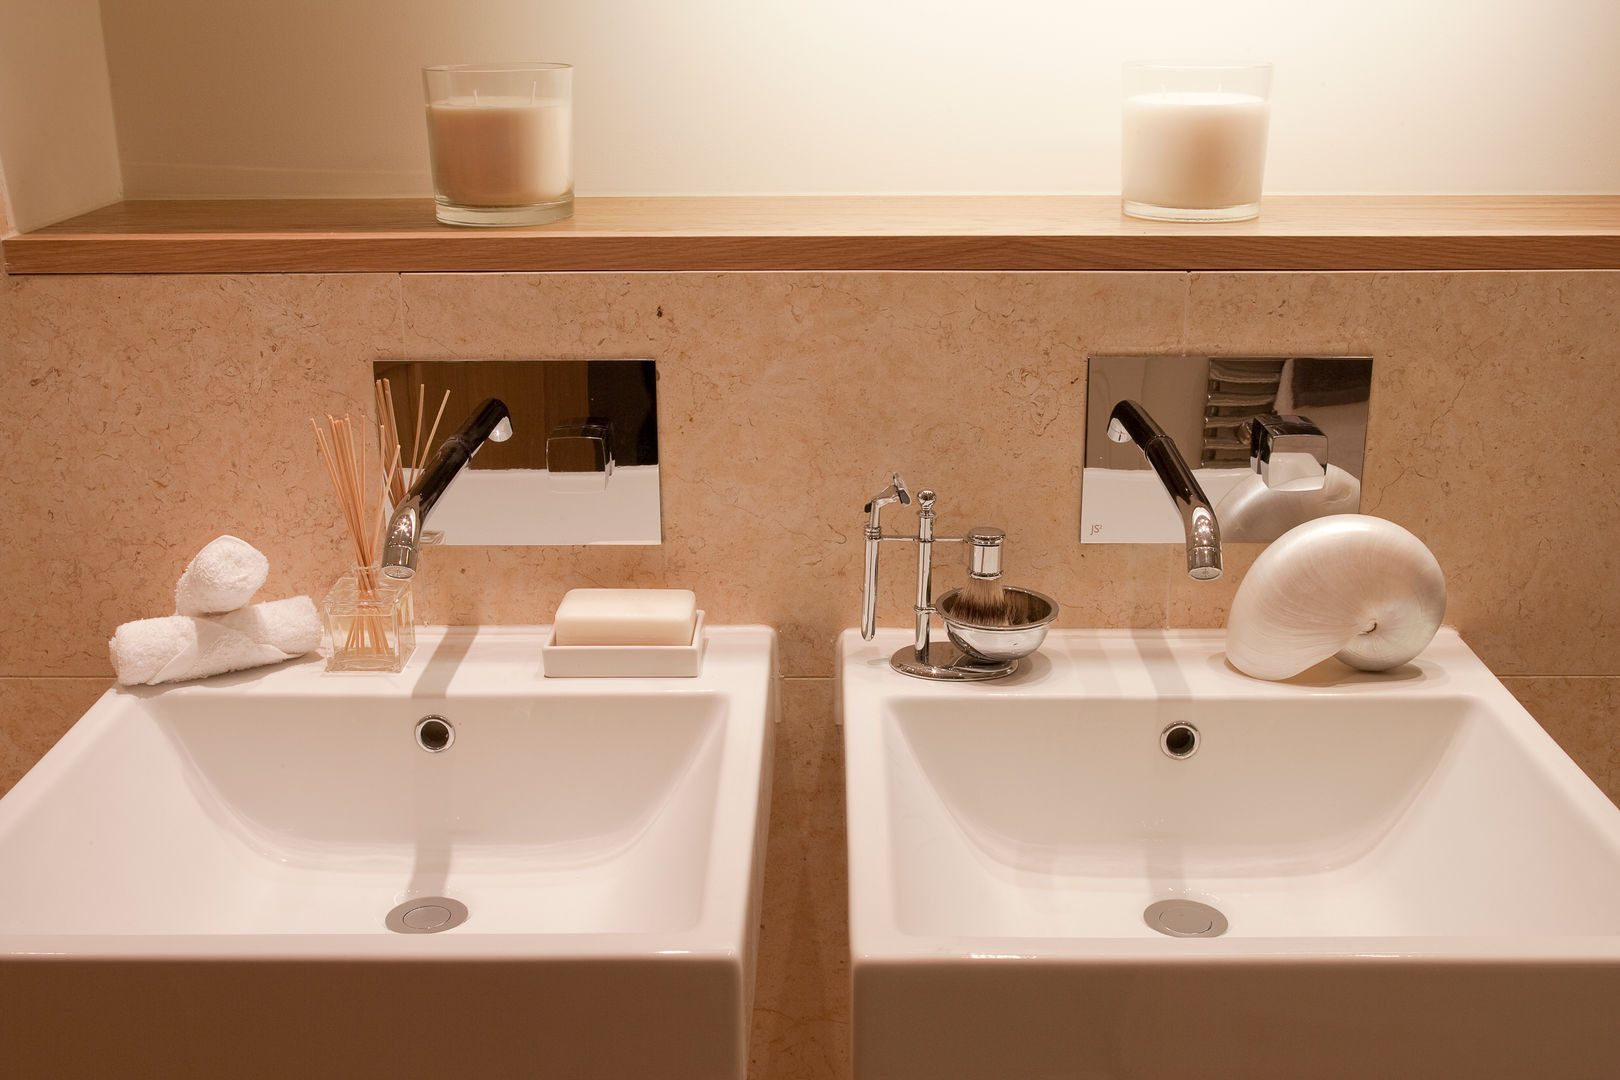 Bathroom Roselind Wilson Design Baños de estilo clásico luxury,candles,modern,bathroom